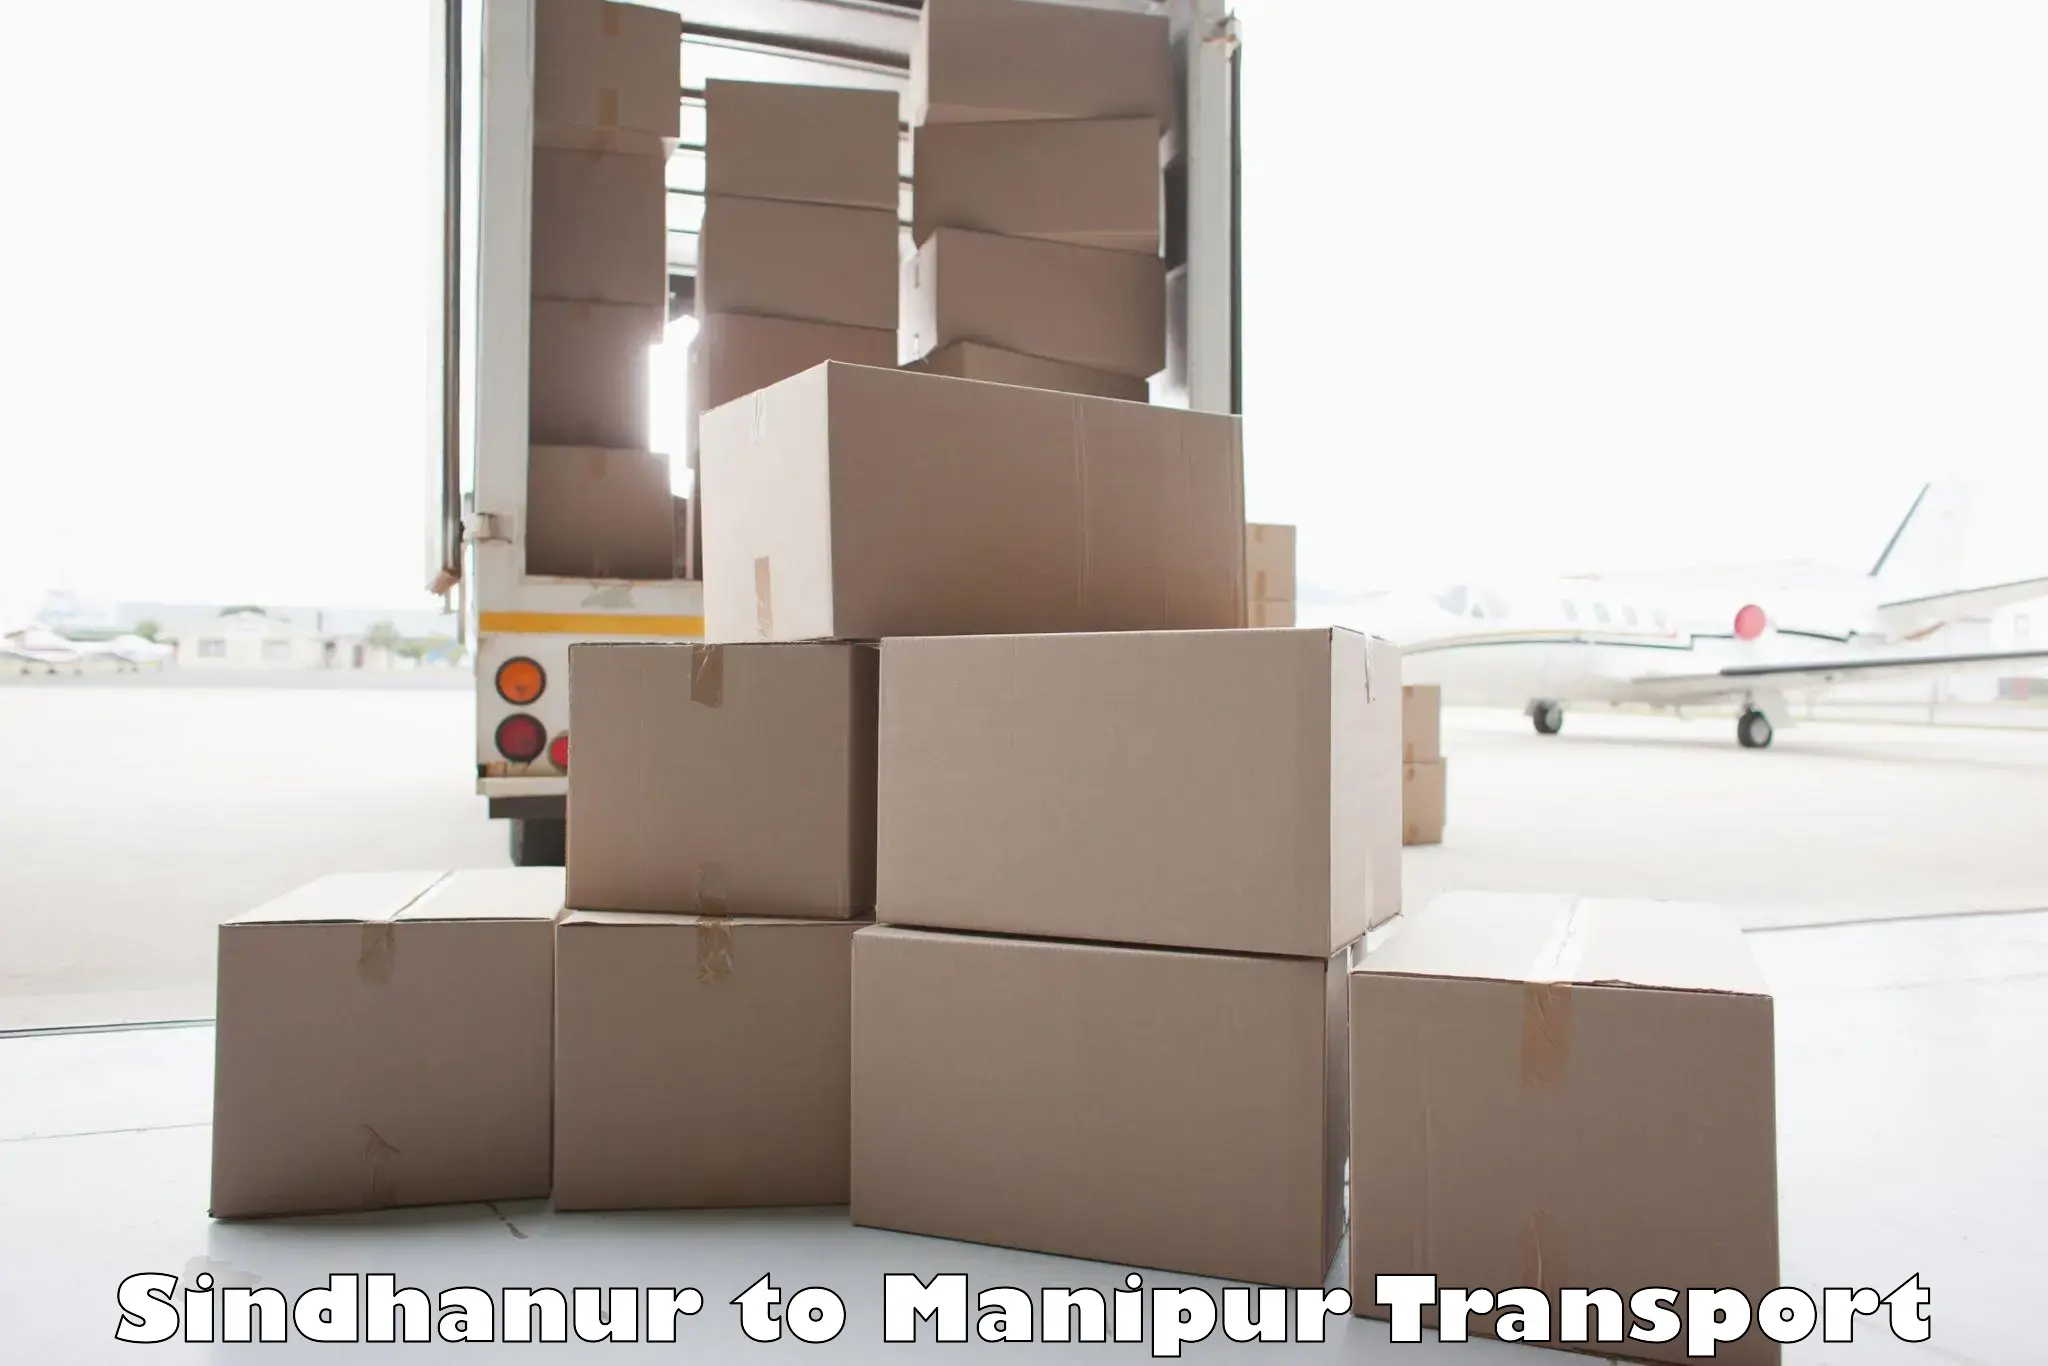 Logistics transportation services Sindhanur to Chandel